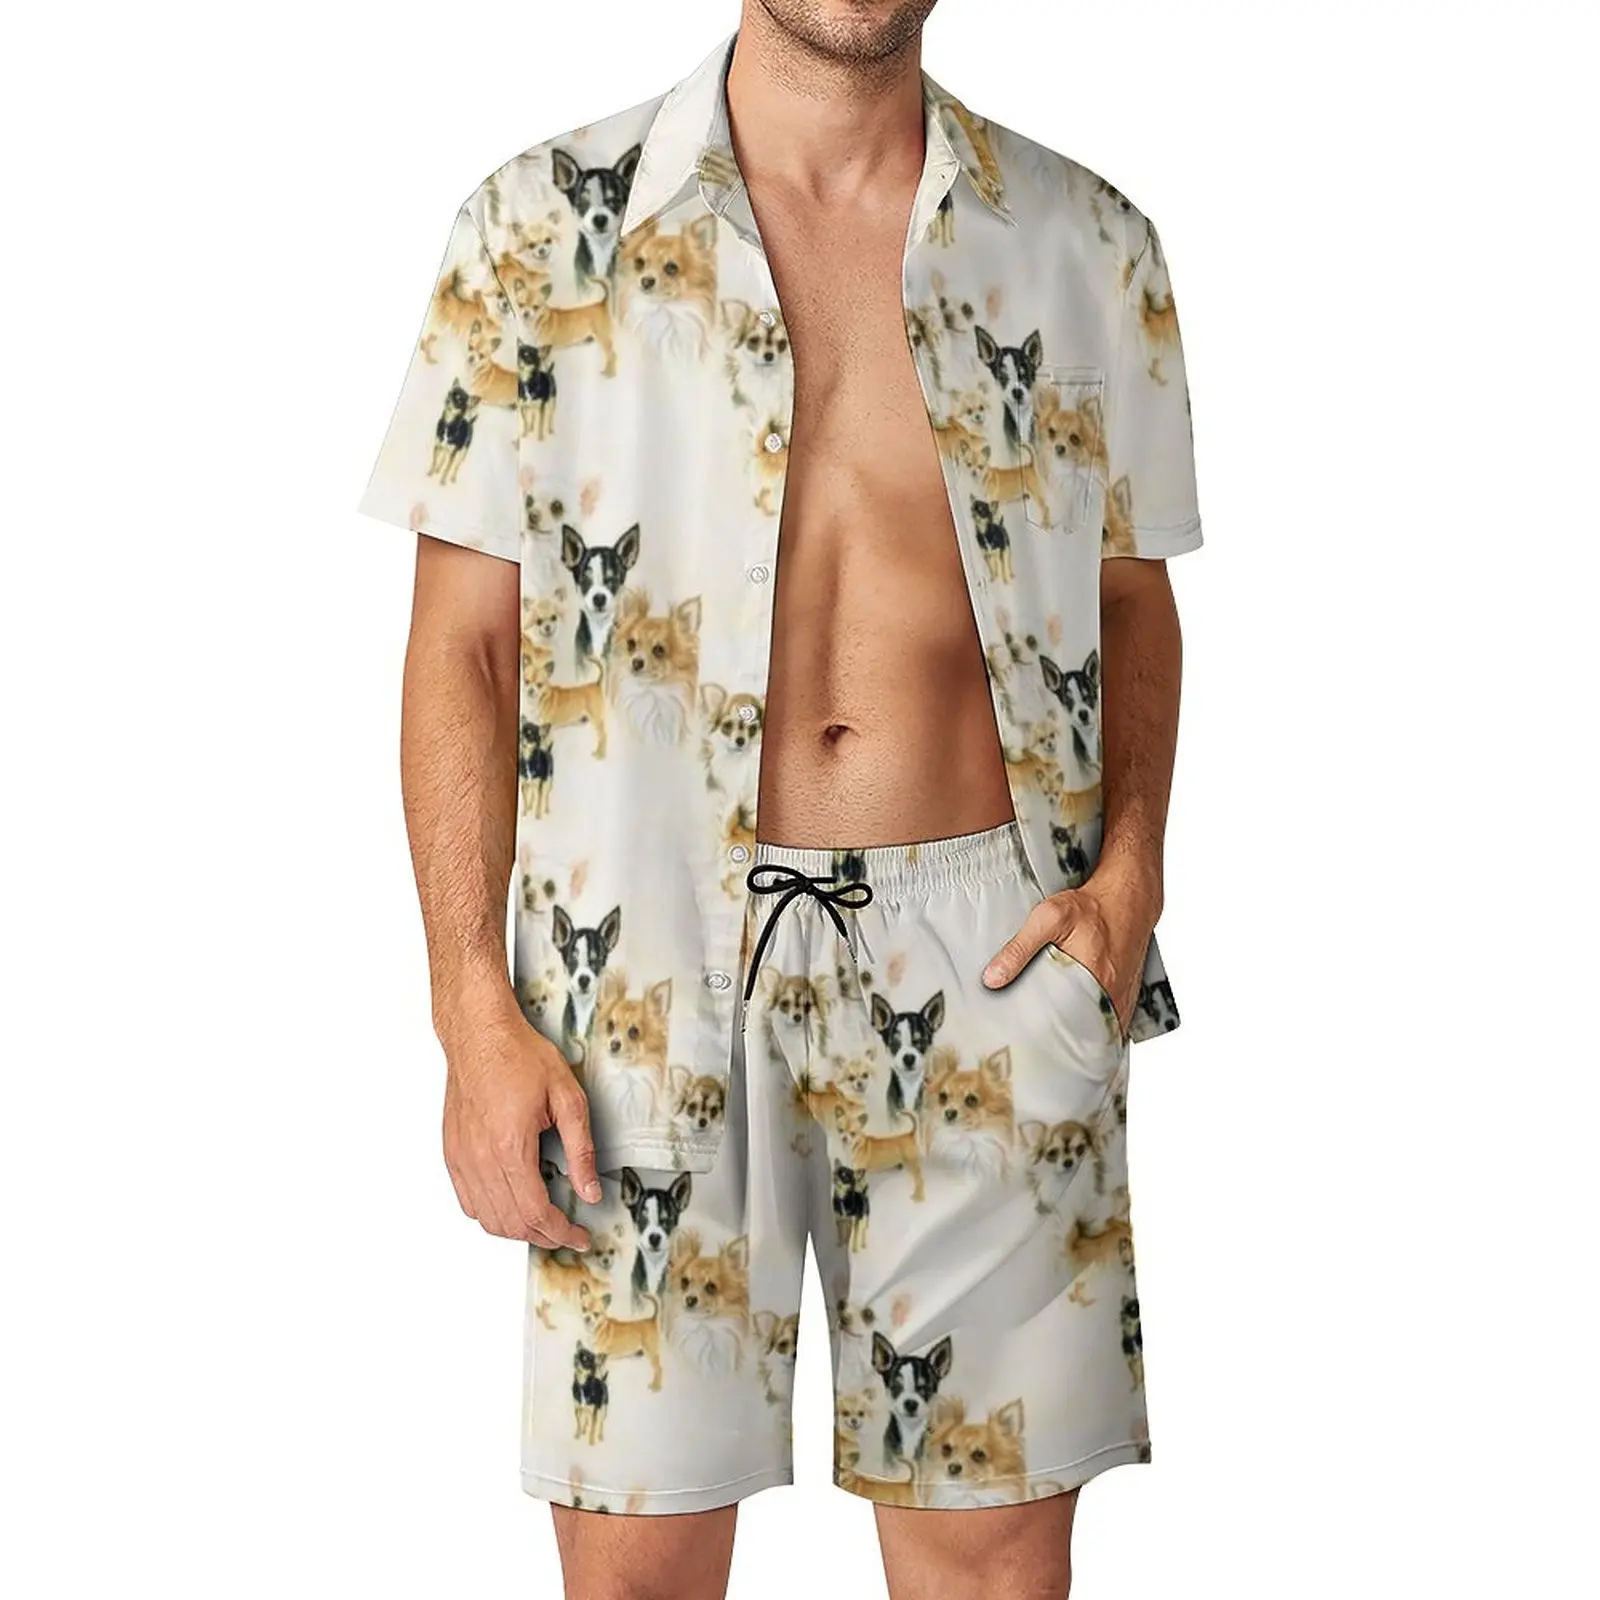 

Комплект для чихуахуа мужской, Повседневная пляжная рубашка с шортами и графическим принтом, гавайский костюм с коротким рукавом, одежда в стиле оверсайз, на лето